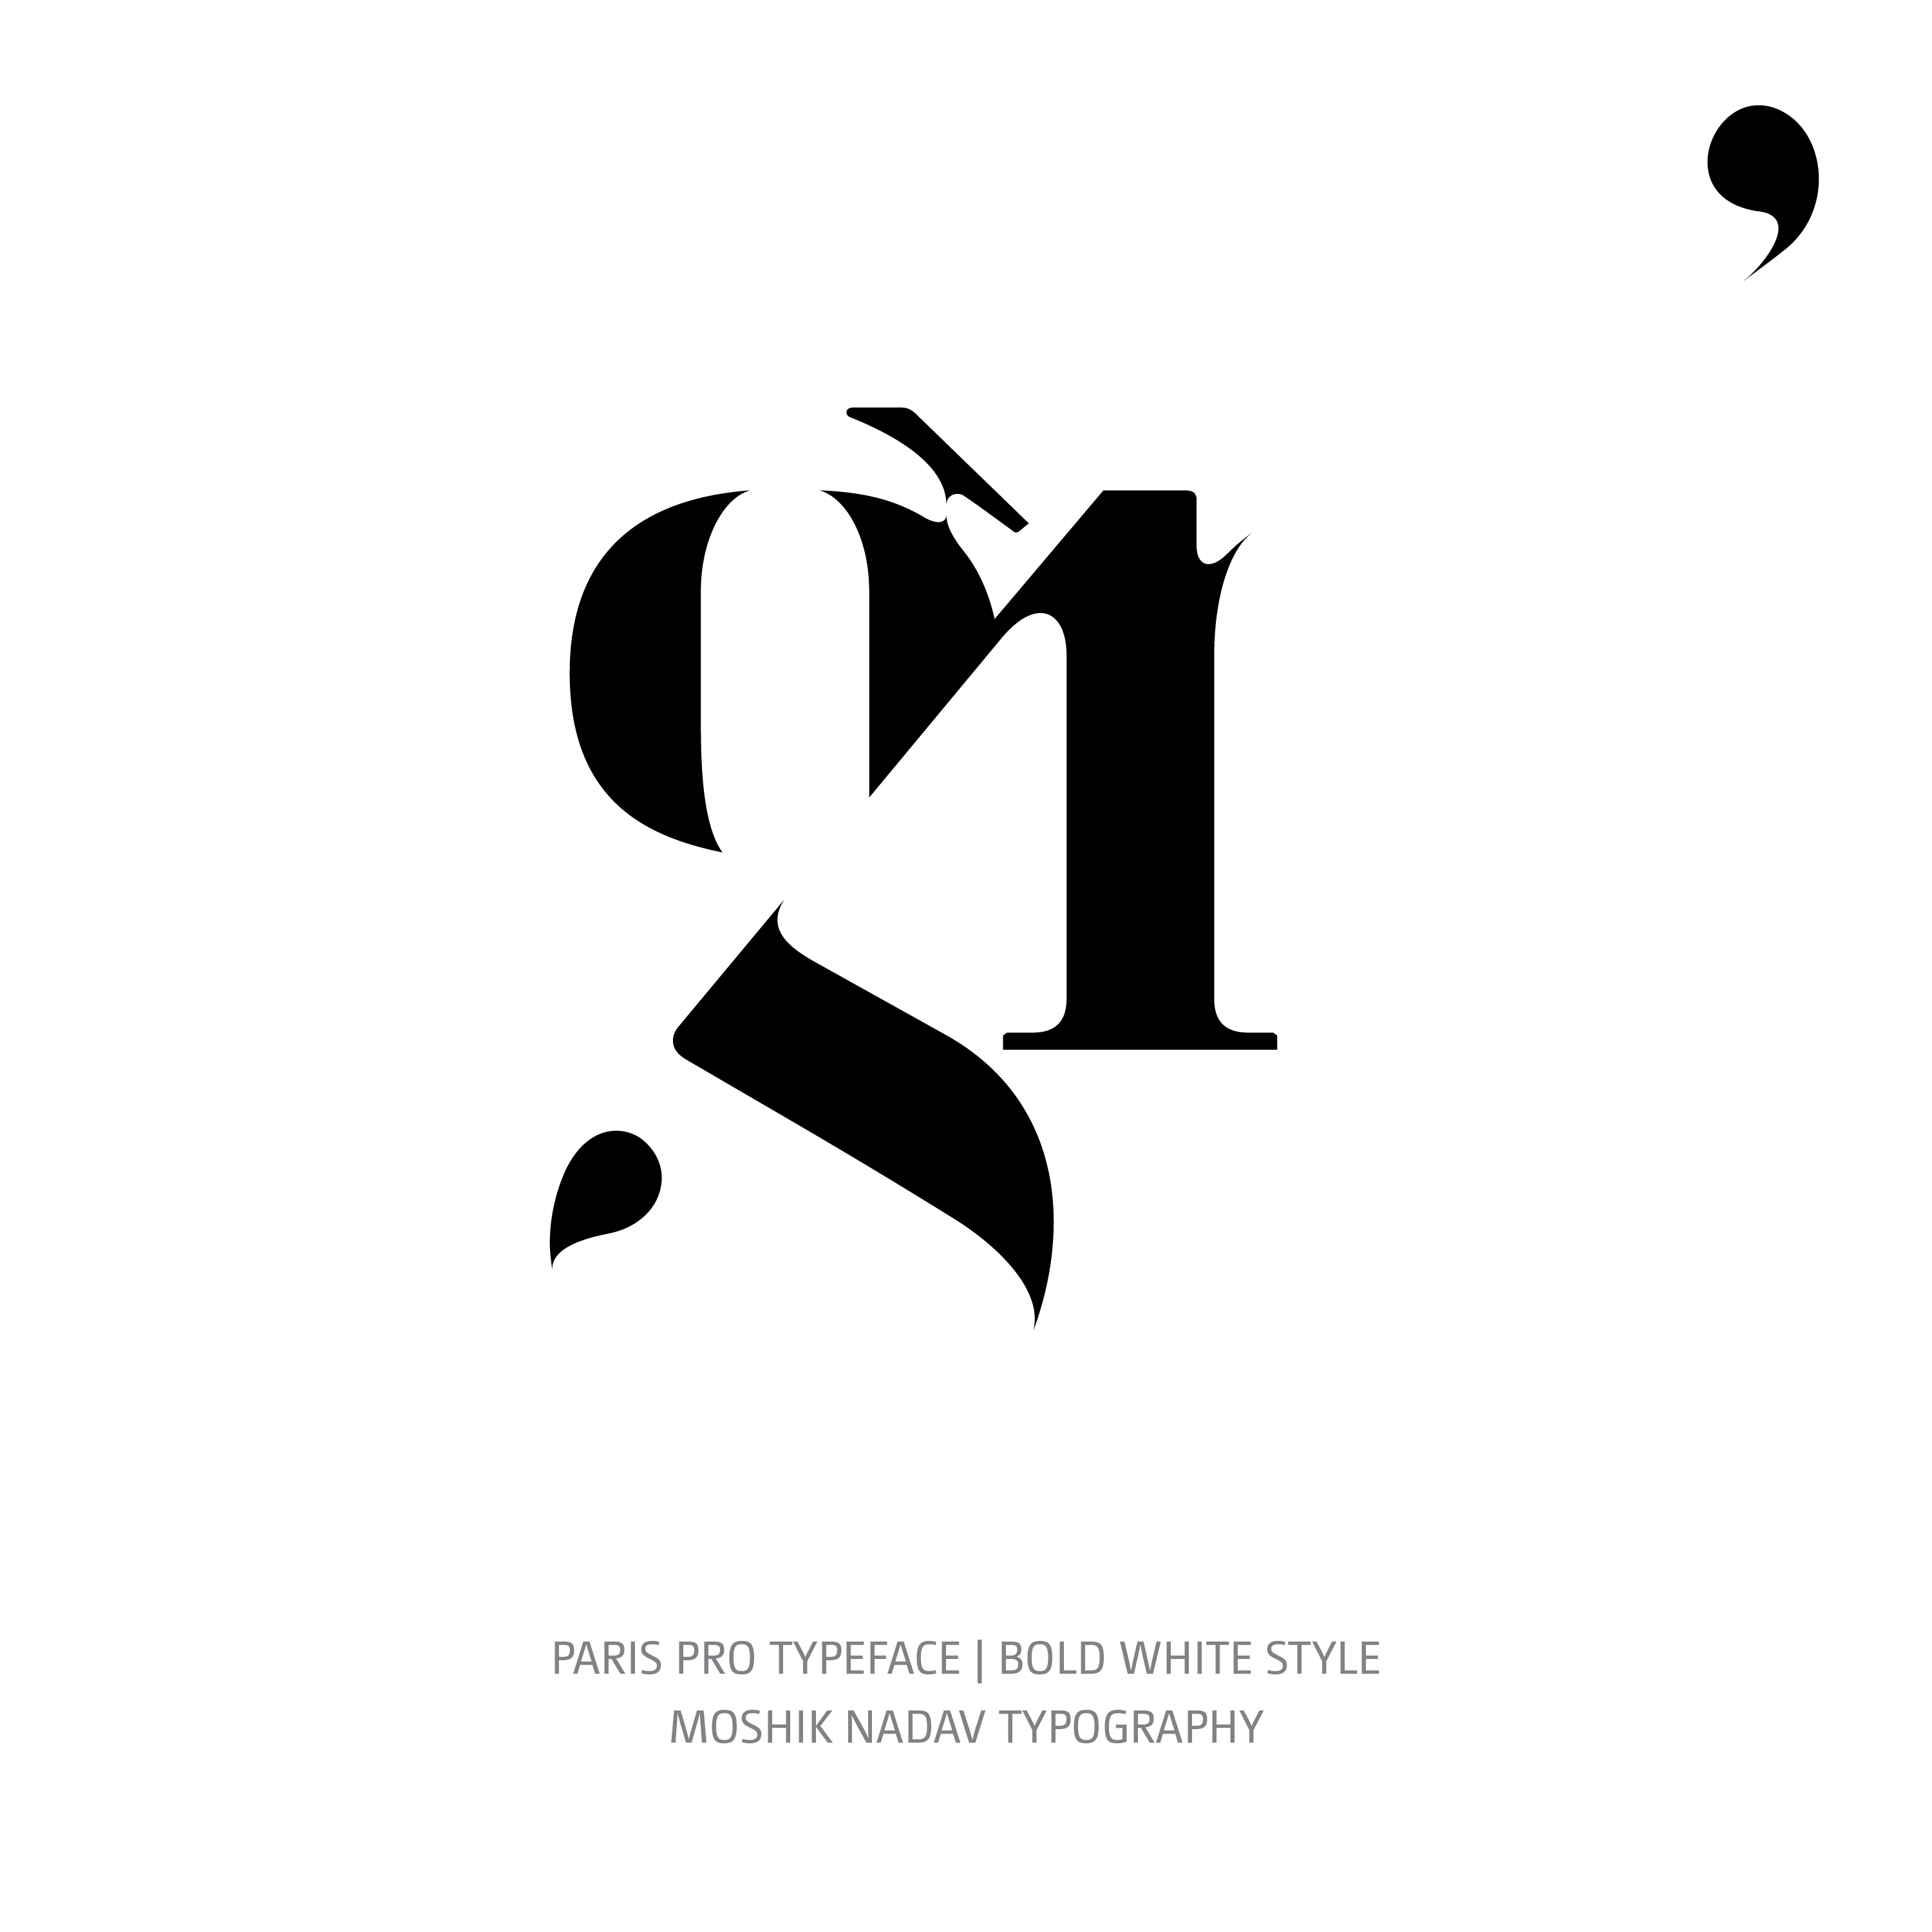 Paris Pro Typeface Bold White gr ligature